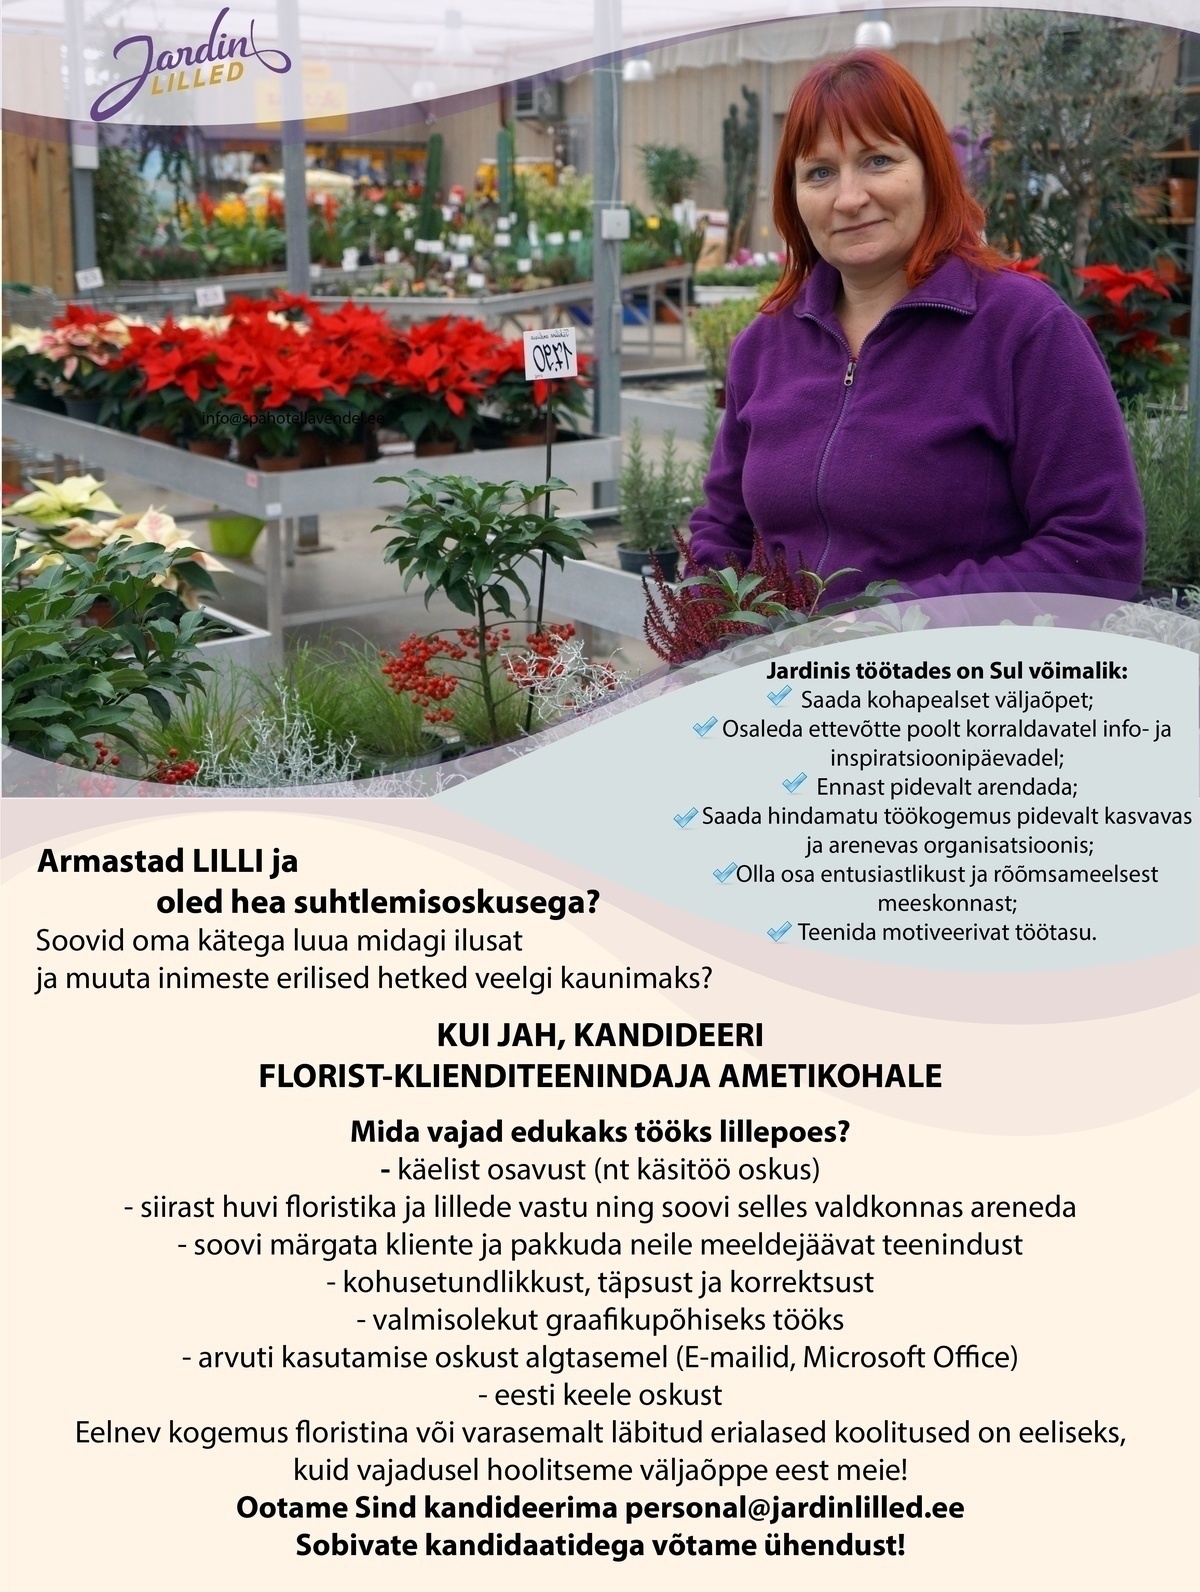 Jardin OÜ Florist-klienditeenindaja (Arsenal ja Viimsi keskusesse)